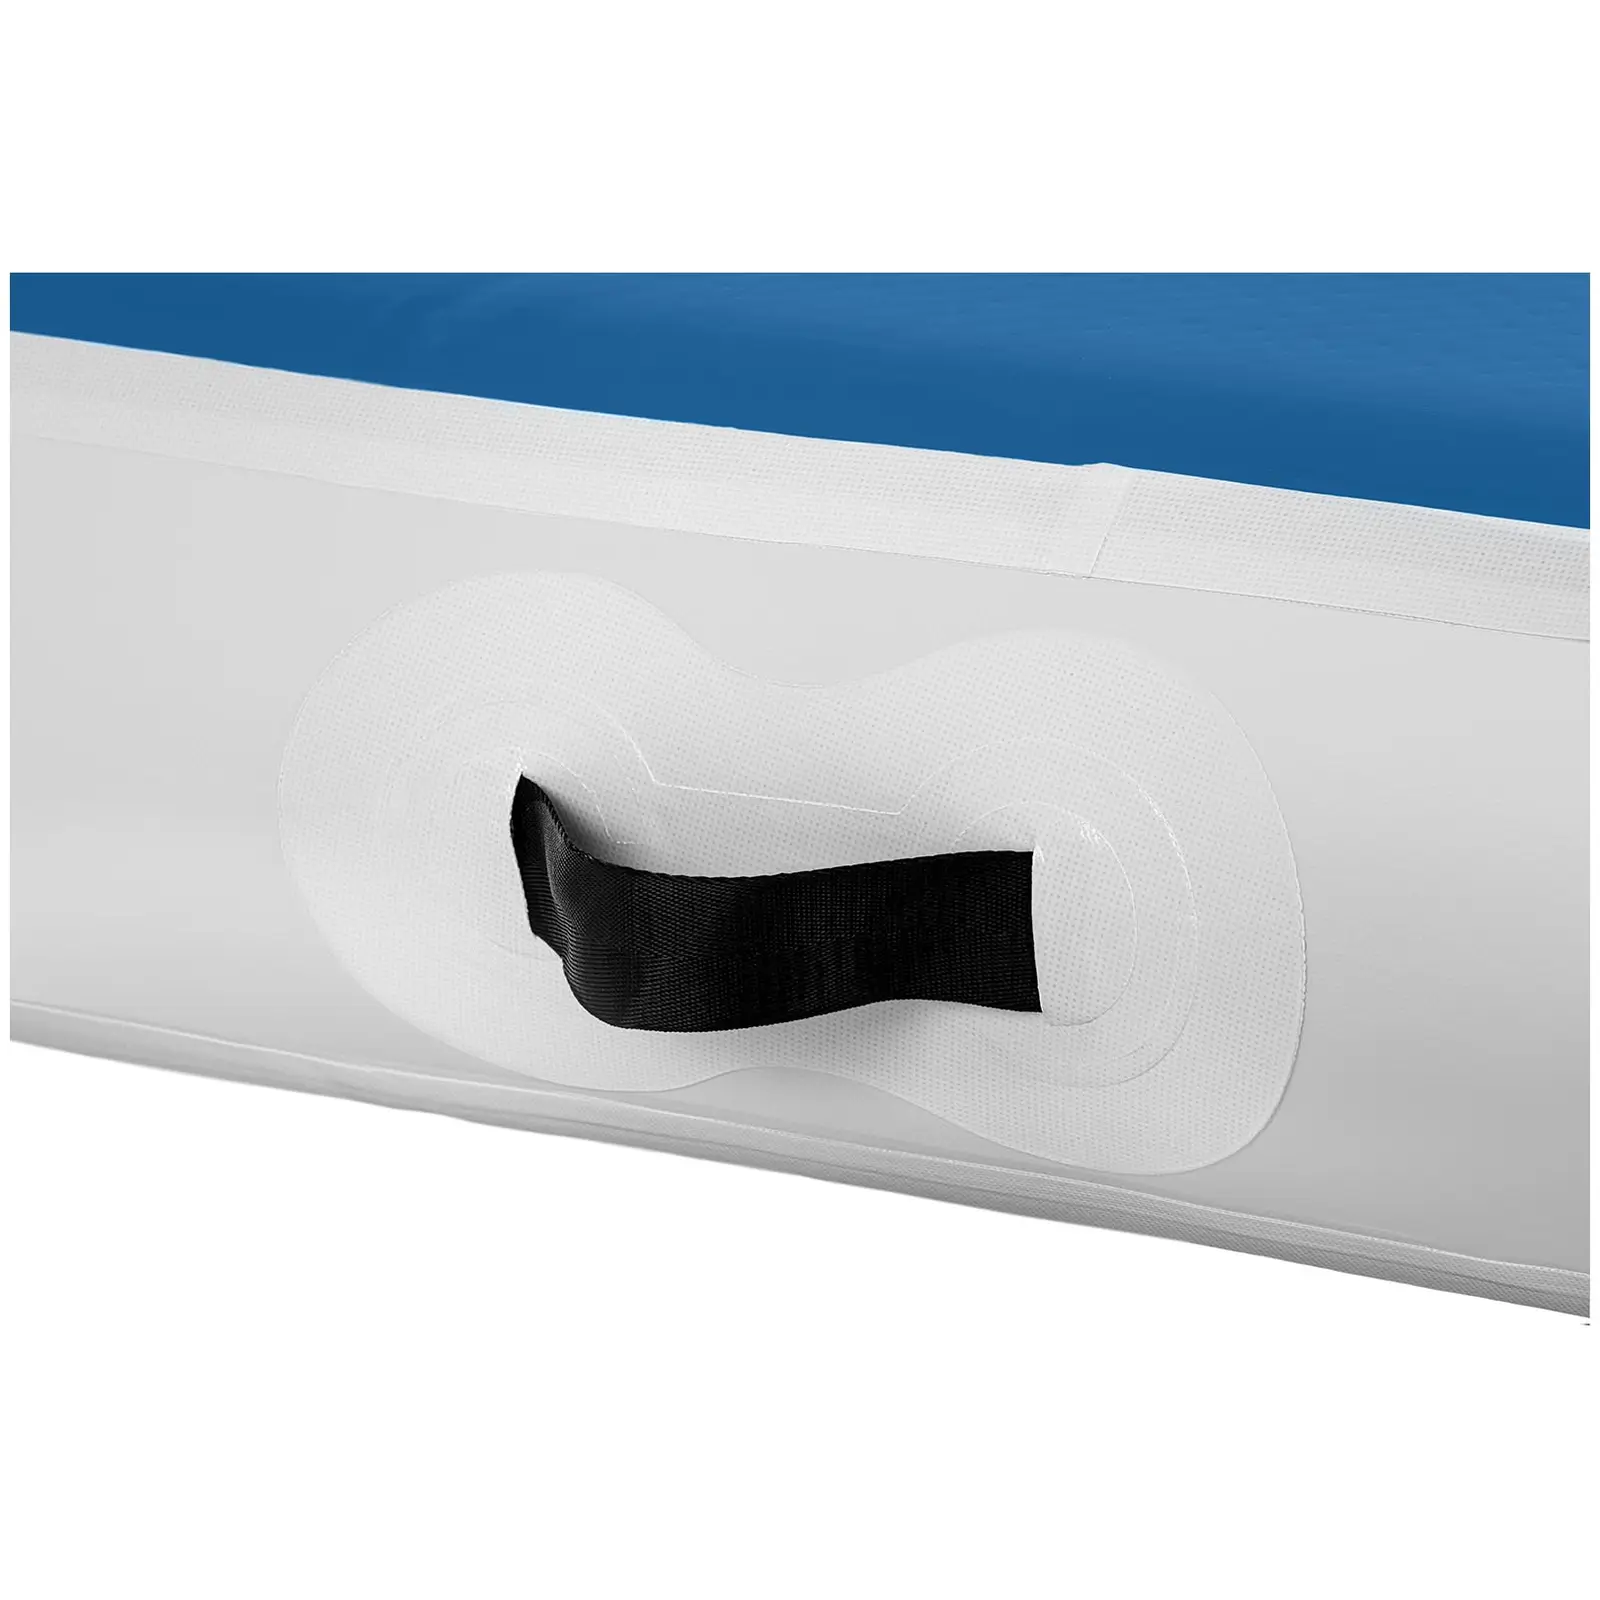 Air track avec gonfleur électrique - 500 x 100 x 20 cm - 250 kg - Bleu/blanc